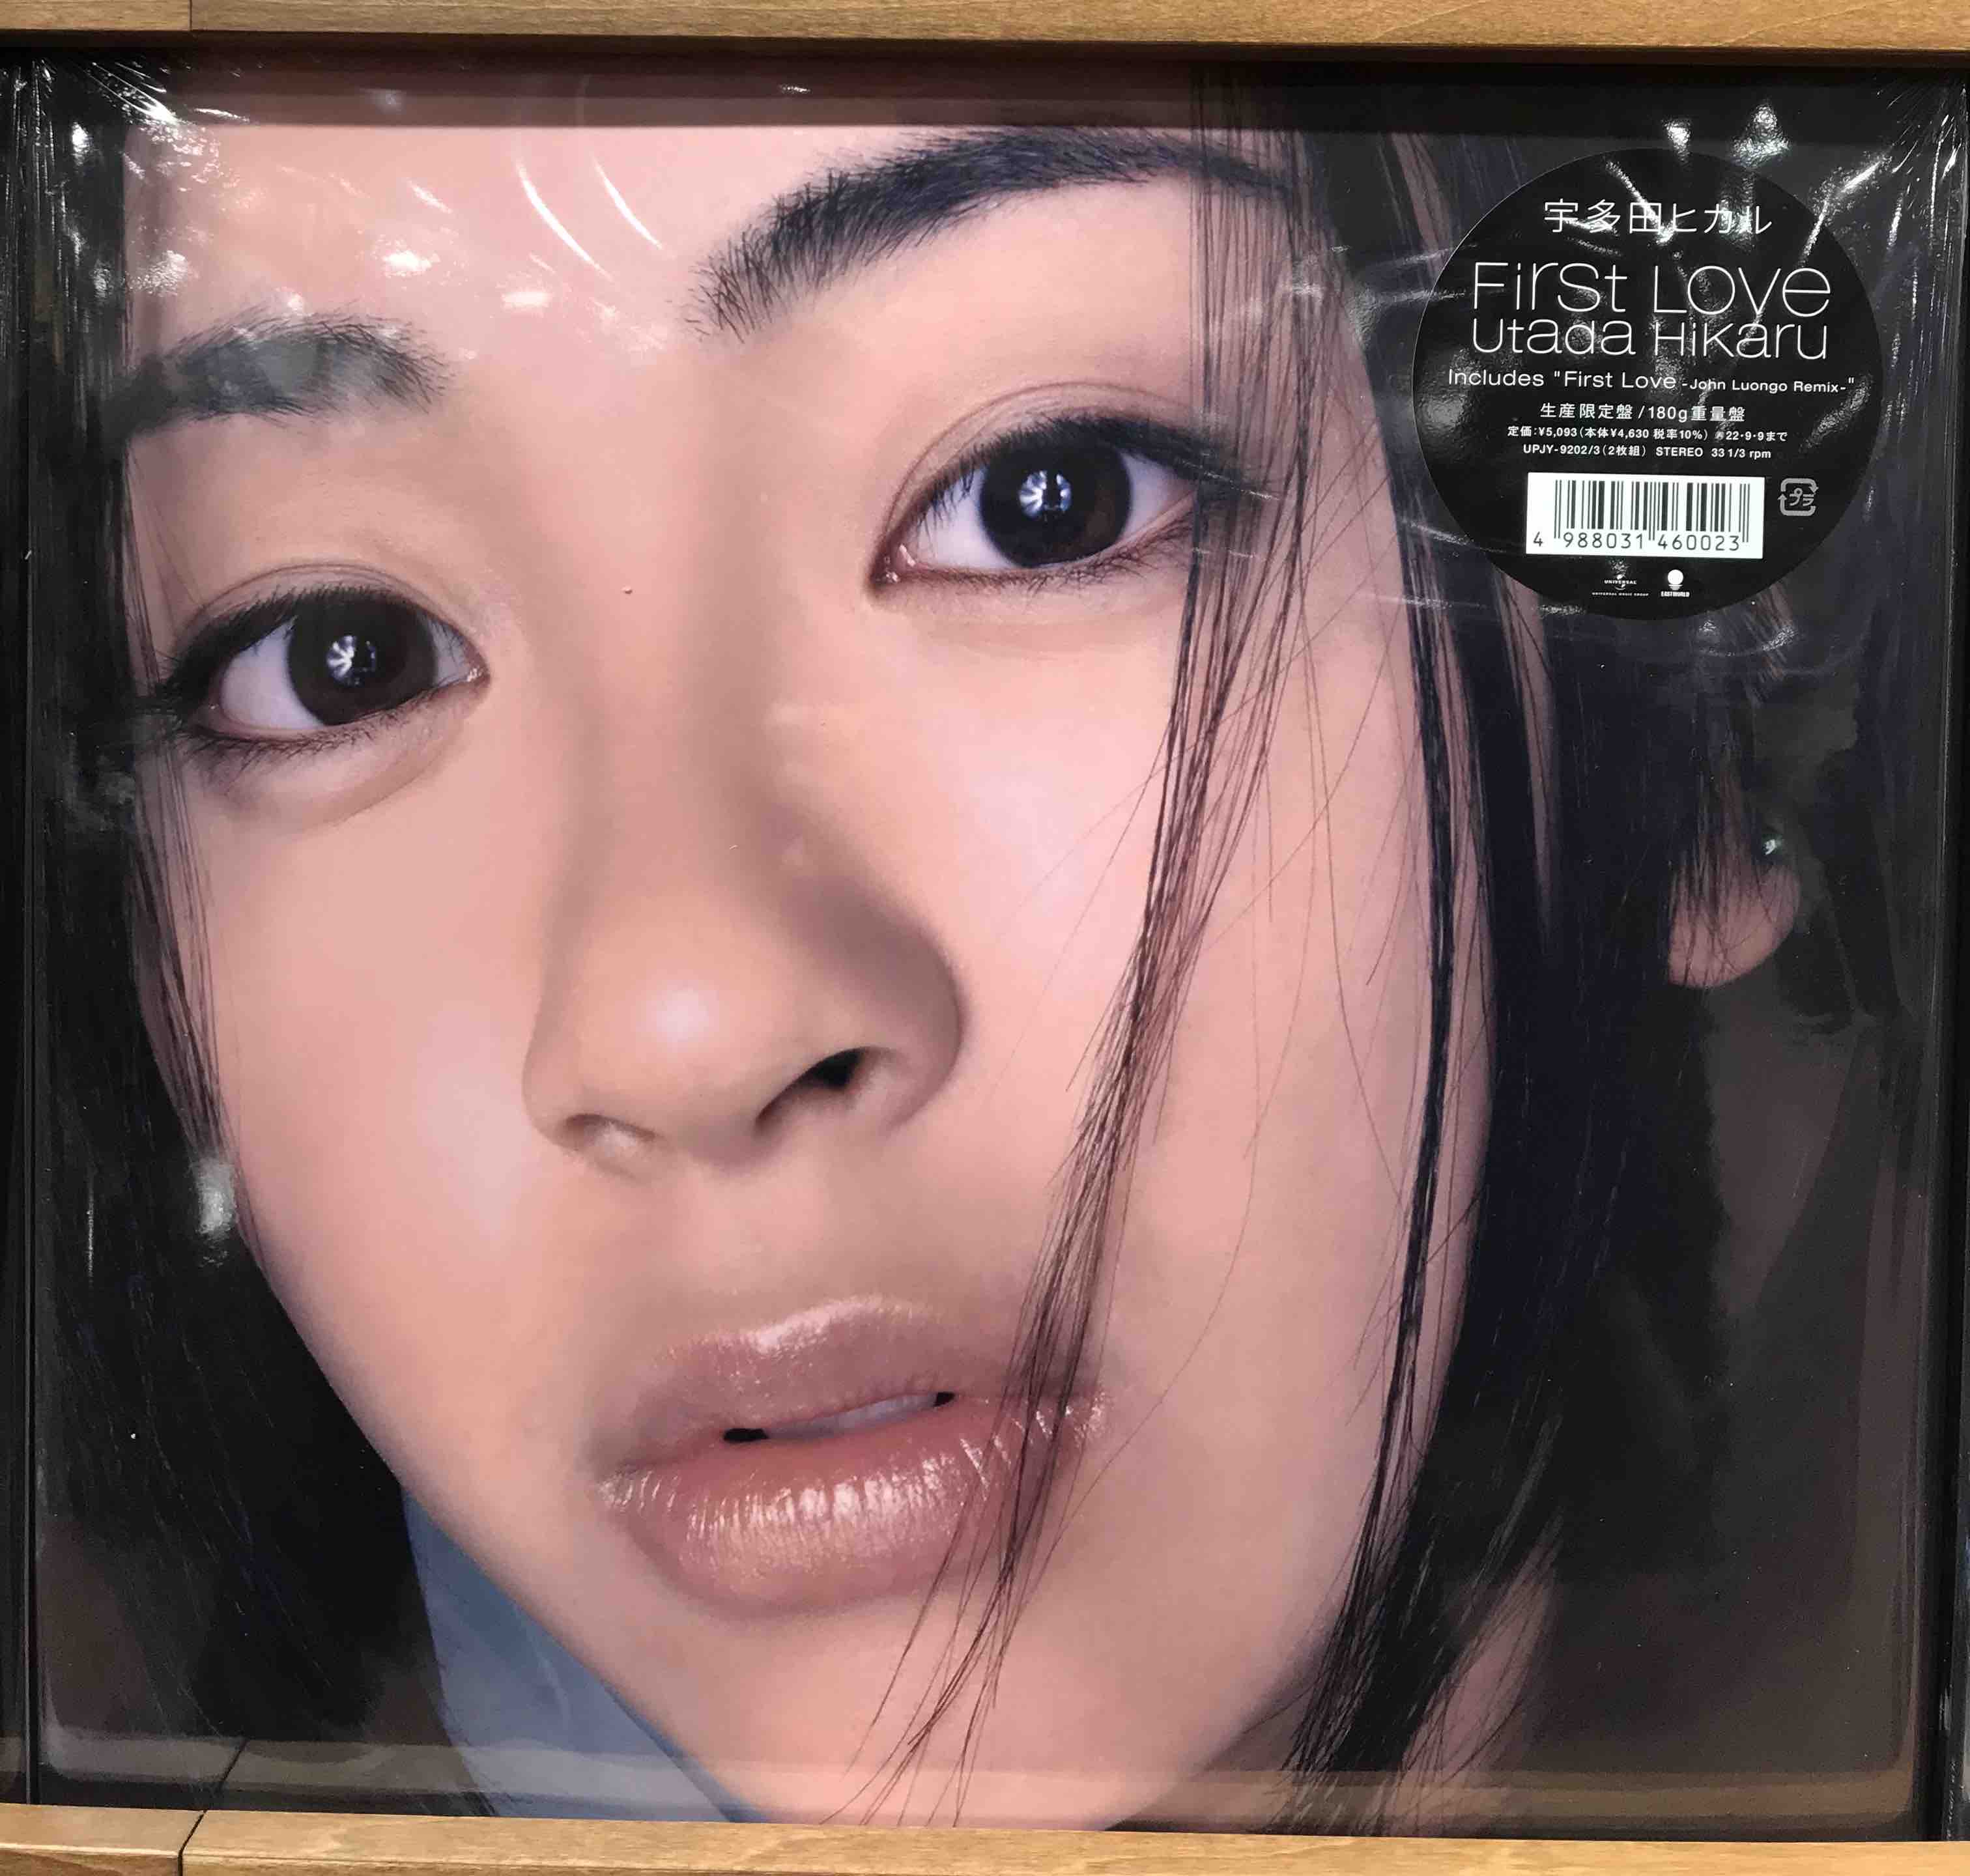 オリジナル盤 宇多田ヒカル First Love レコード LP 1st - 邦楽